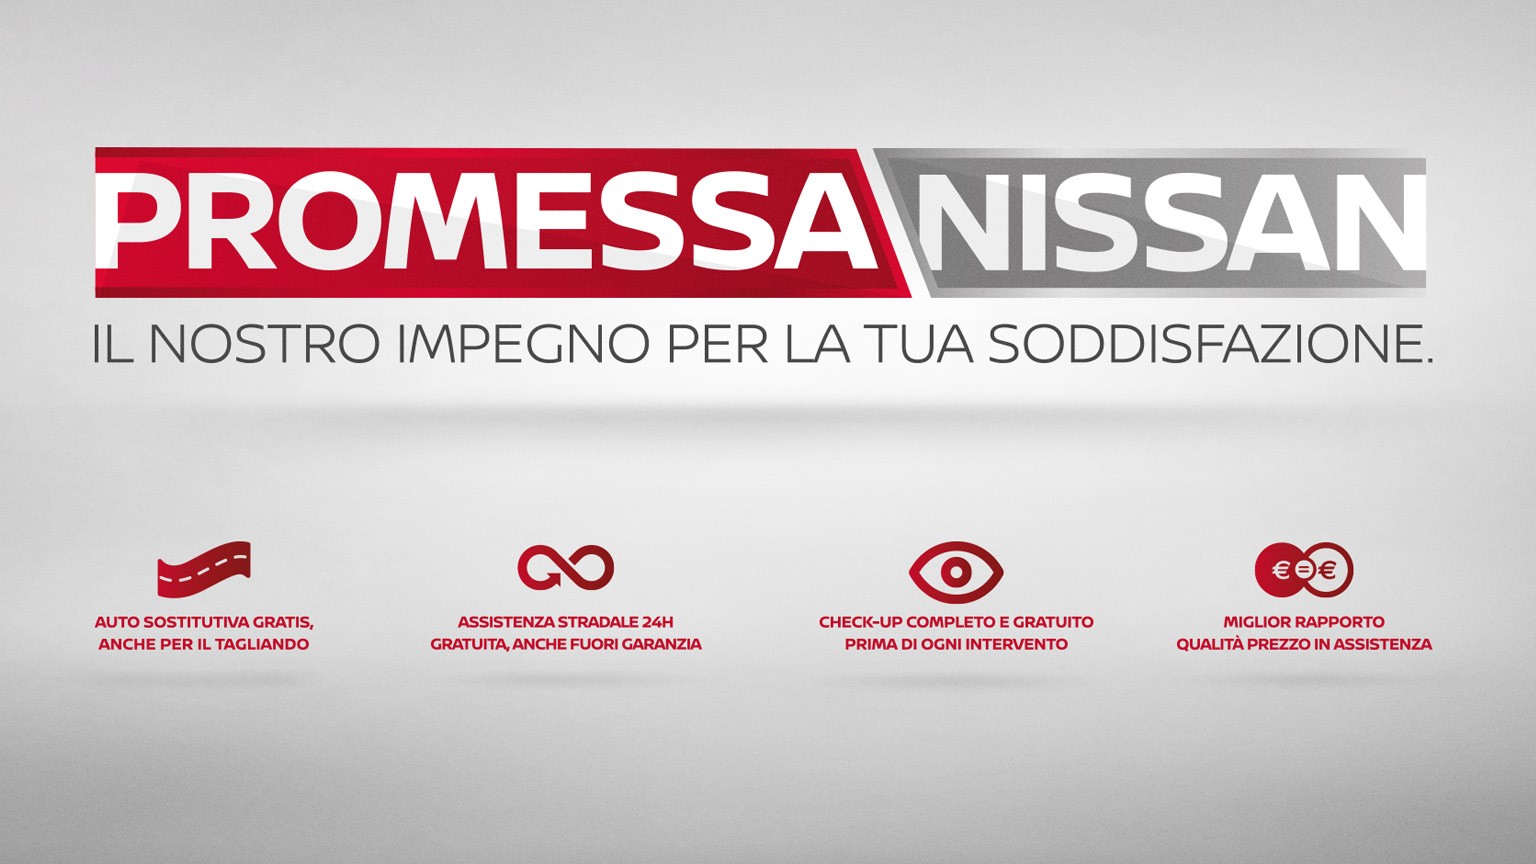 Promessa Nissan: arriva il nuovo programma di assistenza clienti in Italia